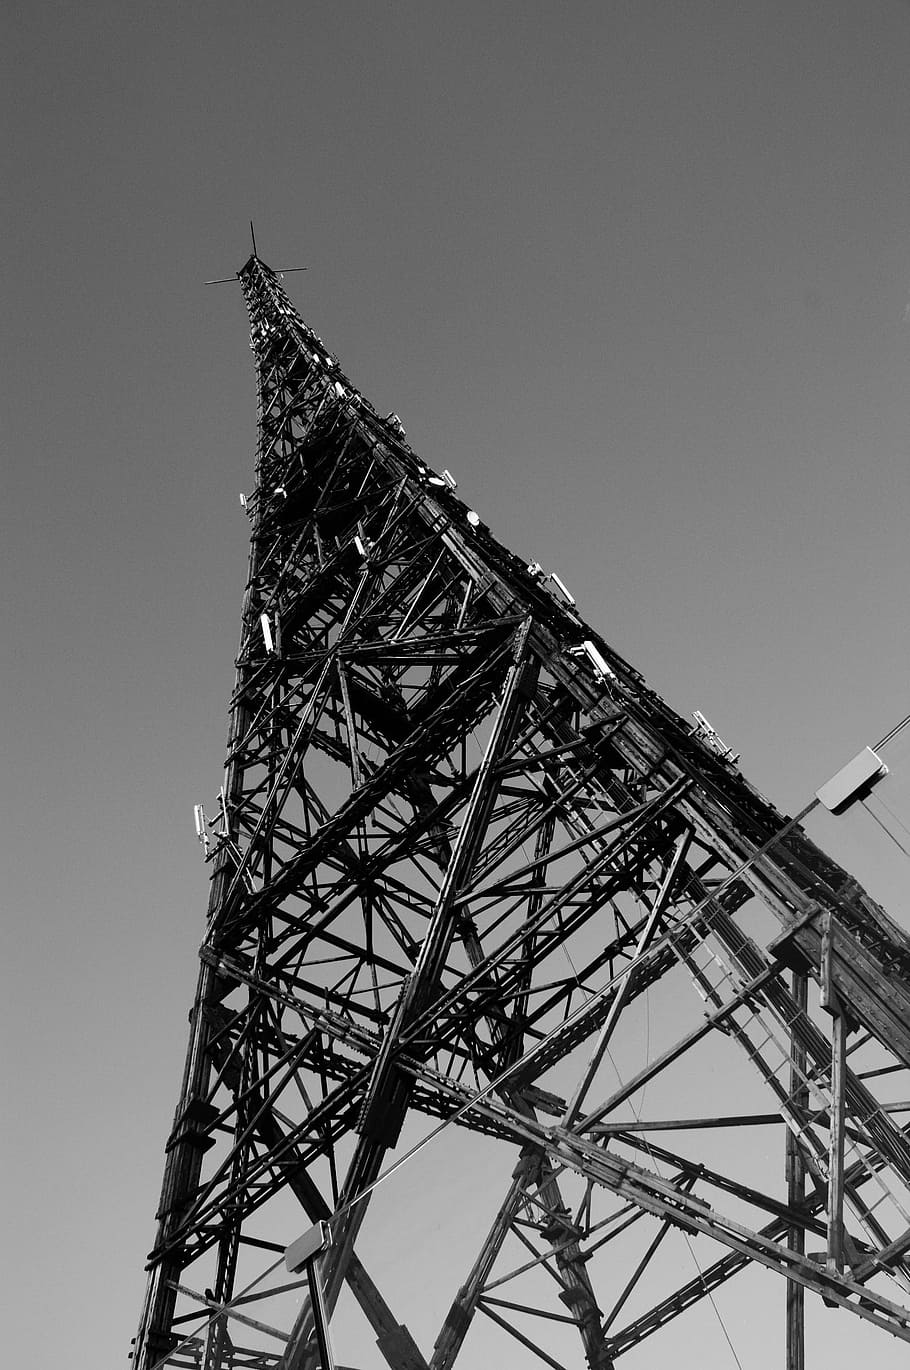 гливице, вышка, радио, металл, польша, связь, технологии, телекоммуникационное оборудование, коммуникационная башня, беспроводные технологии